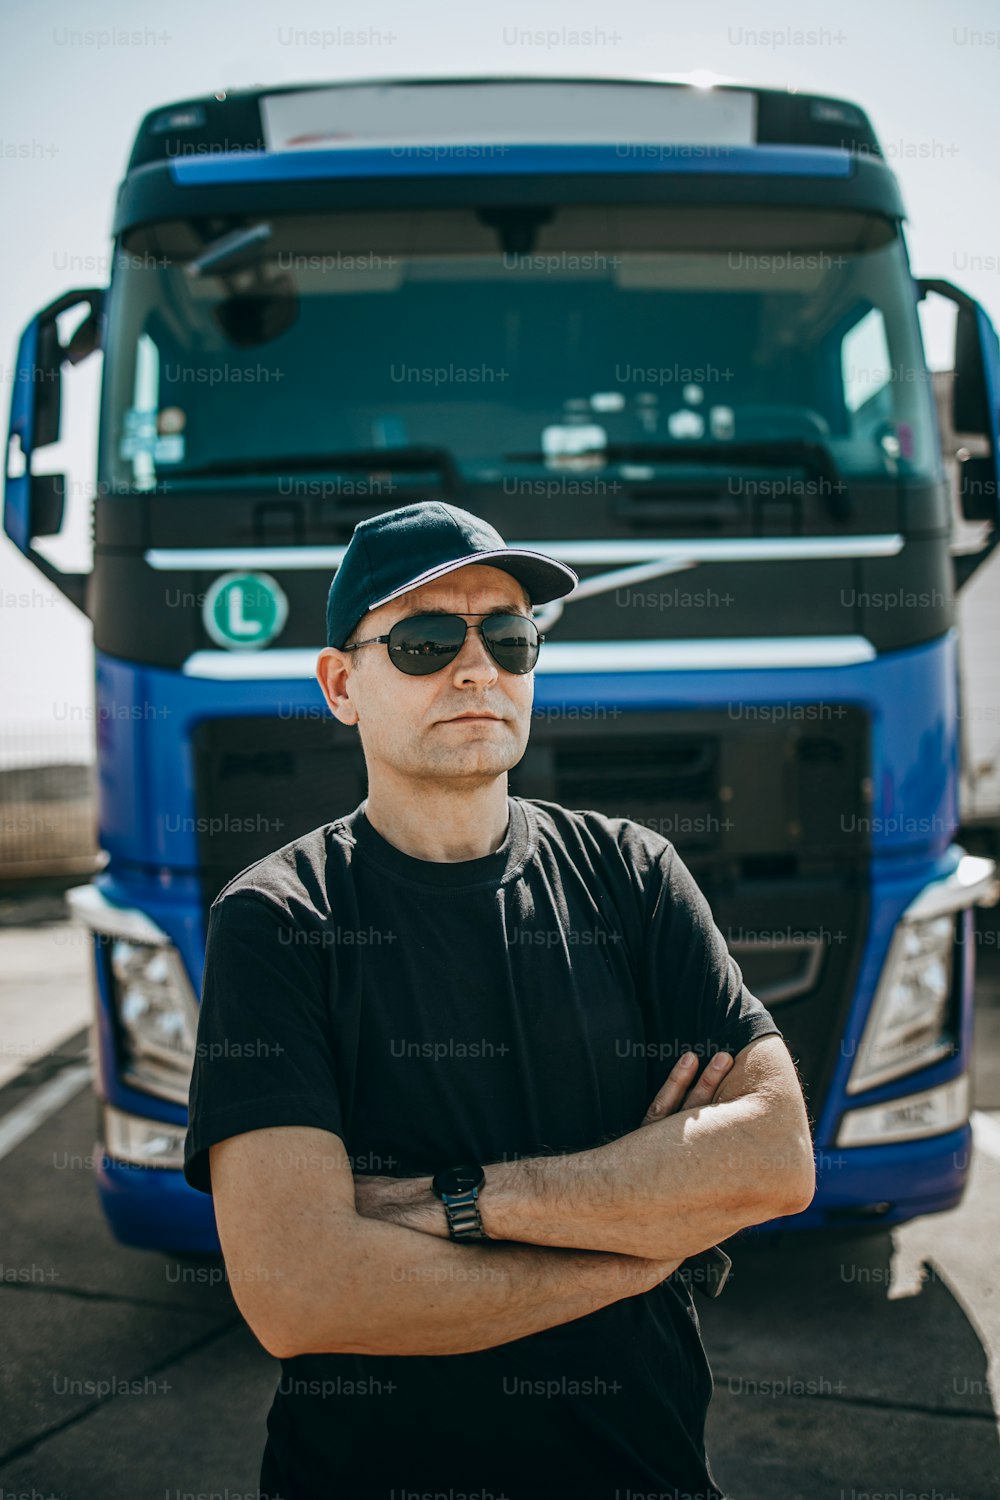 Camionero profesional con sombrero y gafas de sol parado con confianza frente a un camión grande y moderno. Día soleado y brillante. Concepto de personas y transporte.